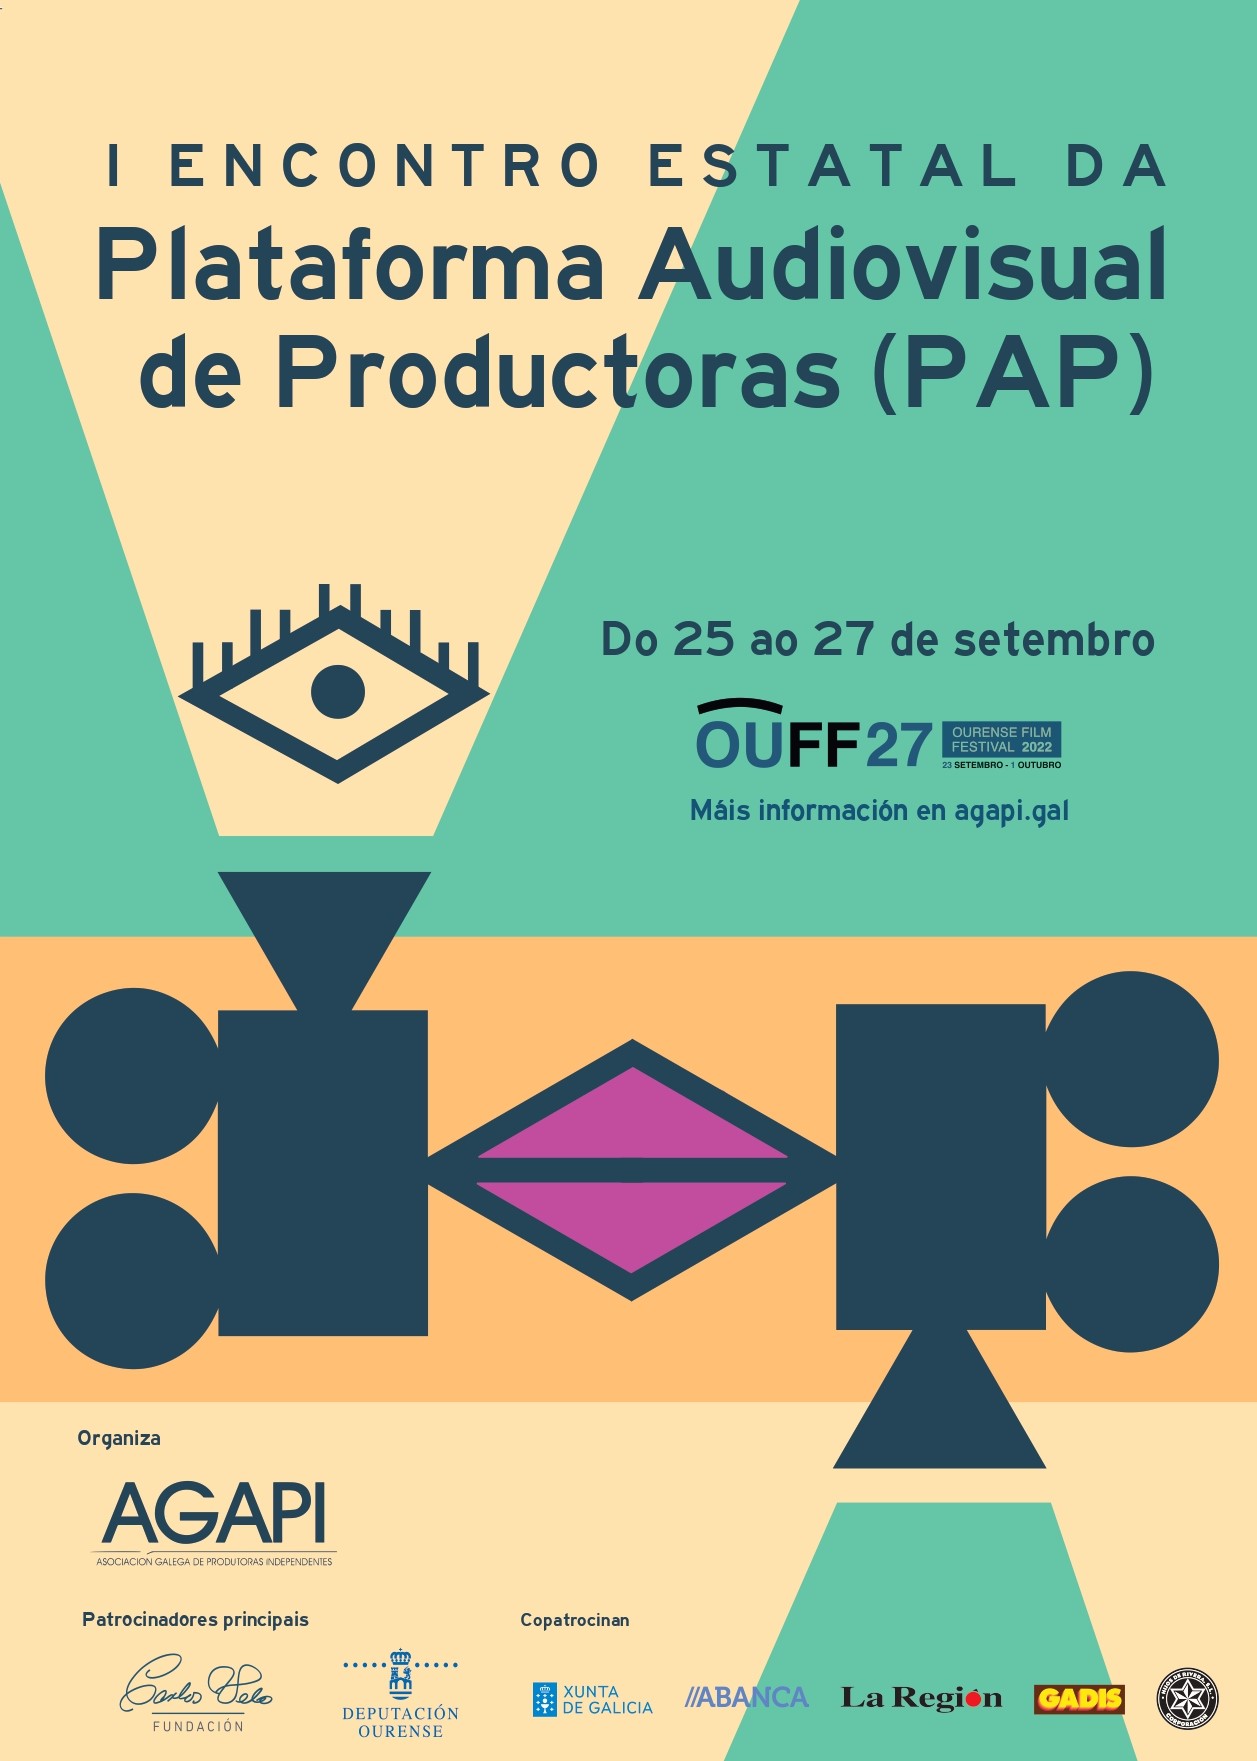 Agapi organiza, coa colaboración do OUFF, o I Encontro Estatal da Plataforma Audiovisual de Produtoras